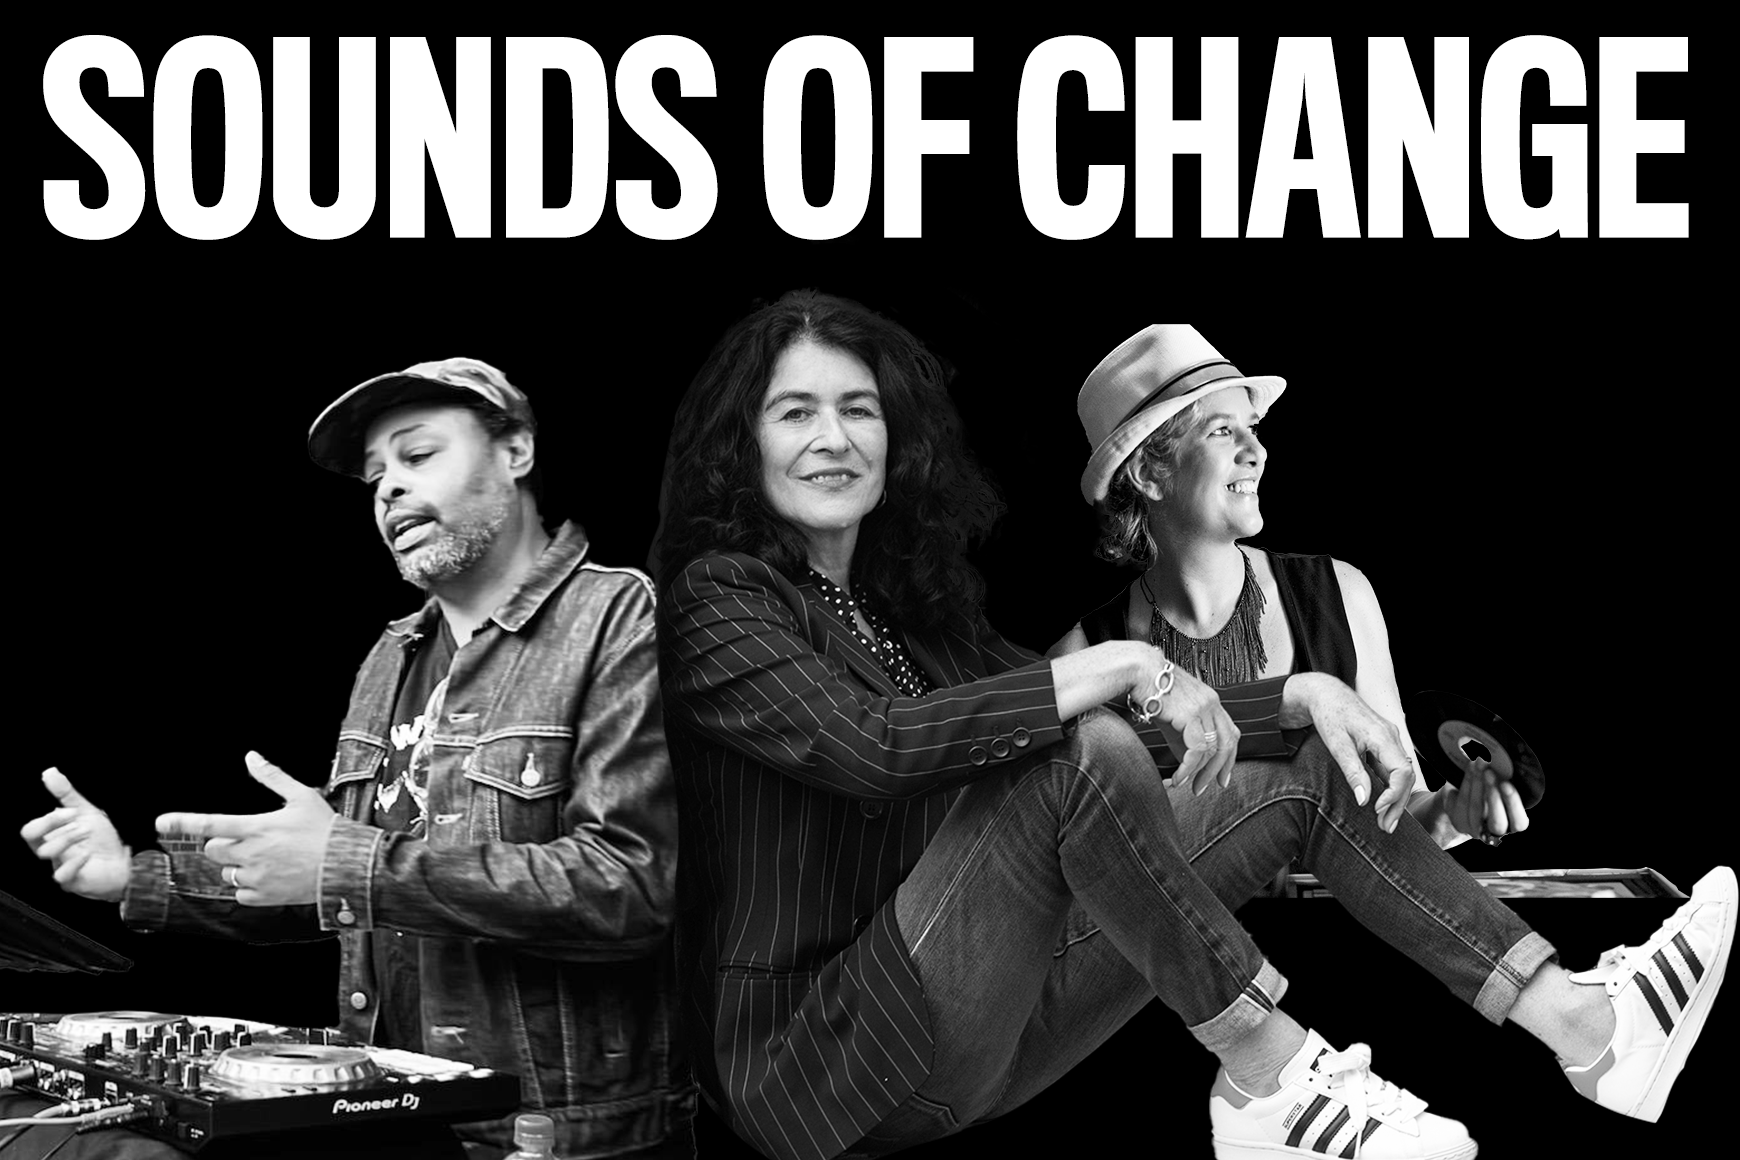 Image en noir et blanc avec texte en gras "Sounds of Change" et collage de DJ Misbehaviour, Operator Emz et Janette Beckman